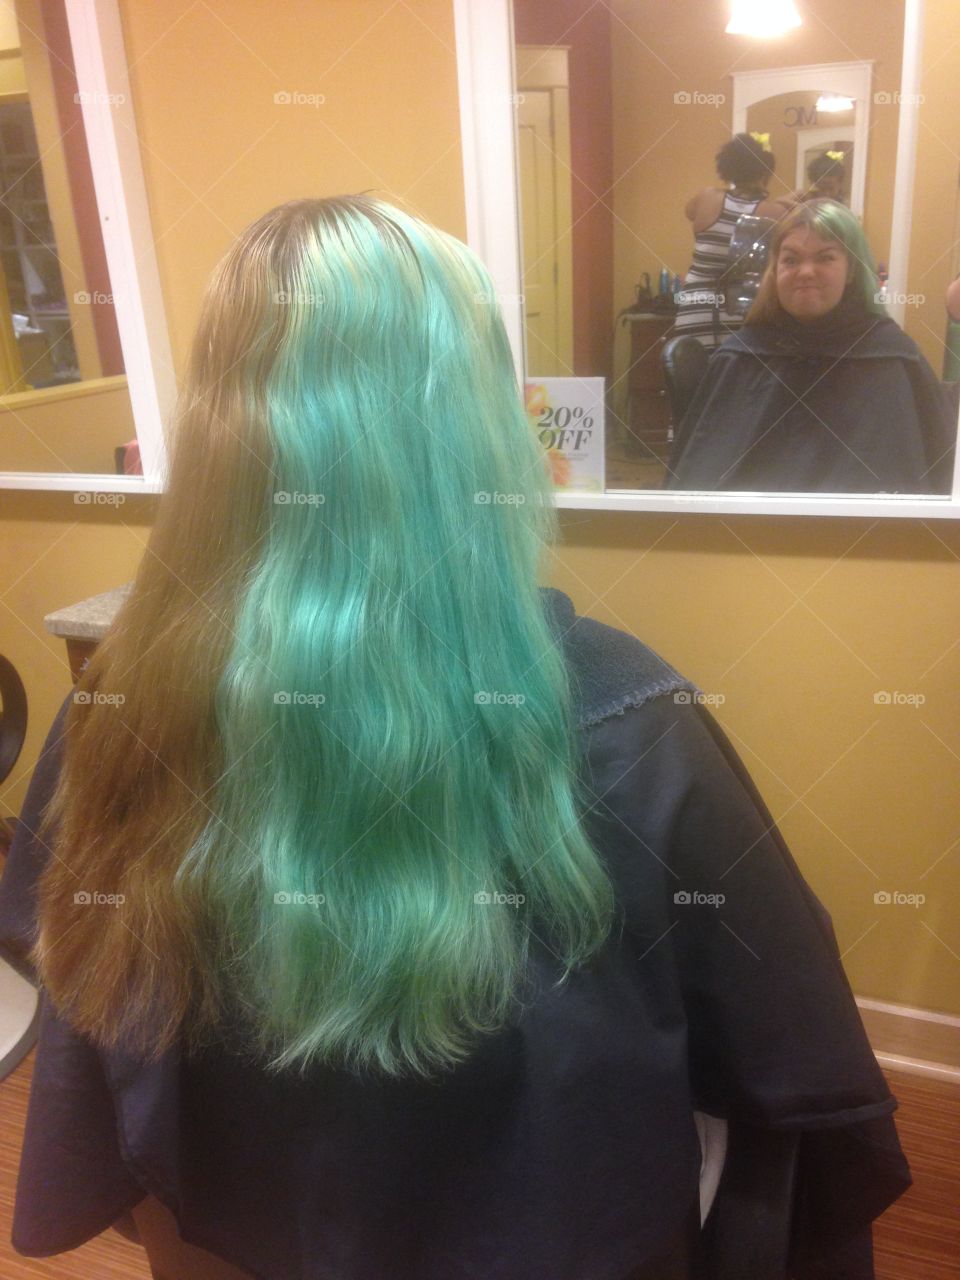 Crazy hair dye job 